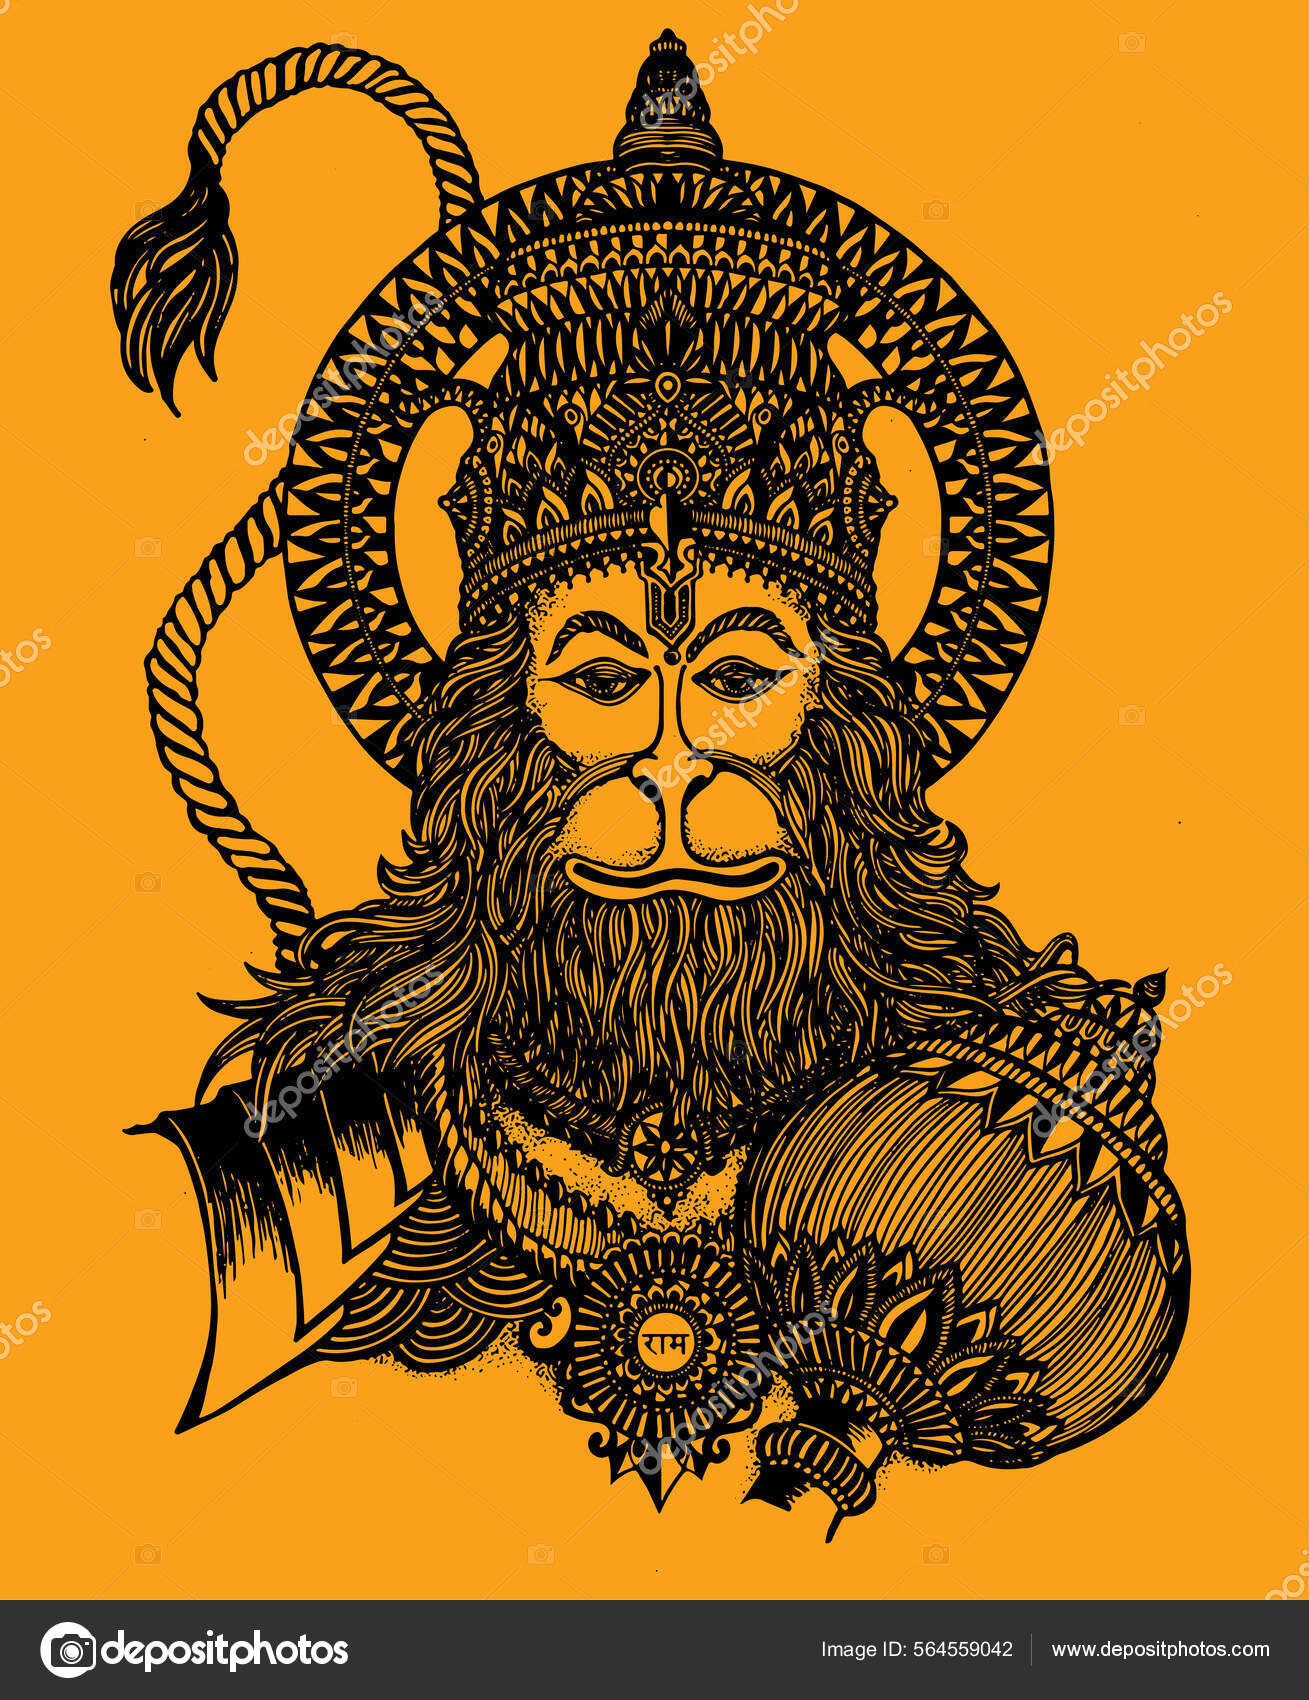 Lord Hanuman ji  Sticker for Sale by aruvanita  Redbubble